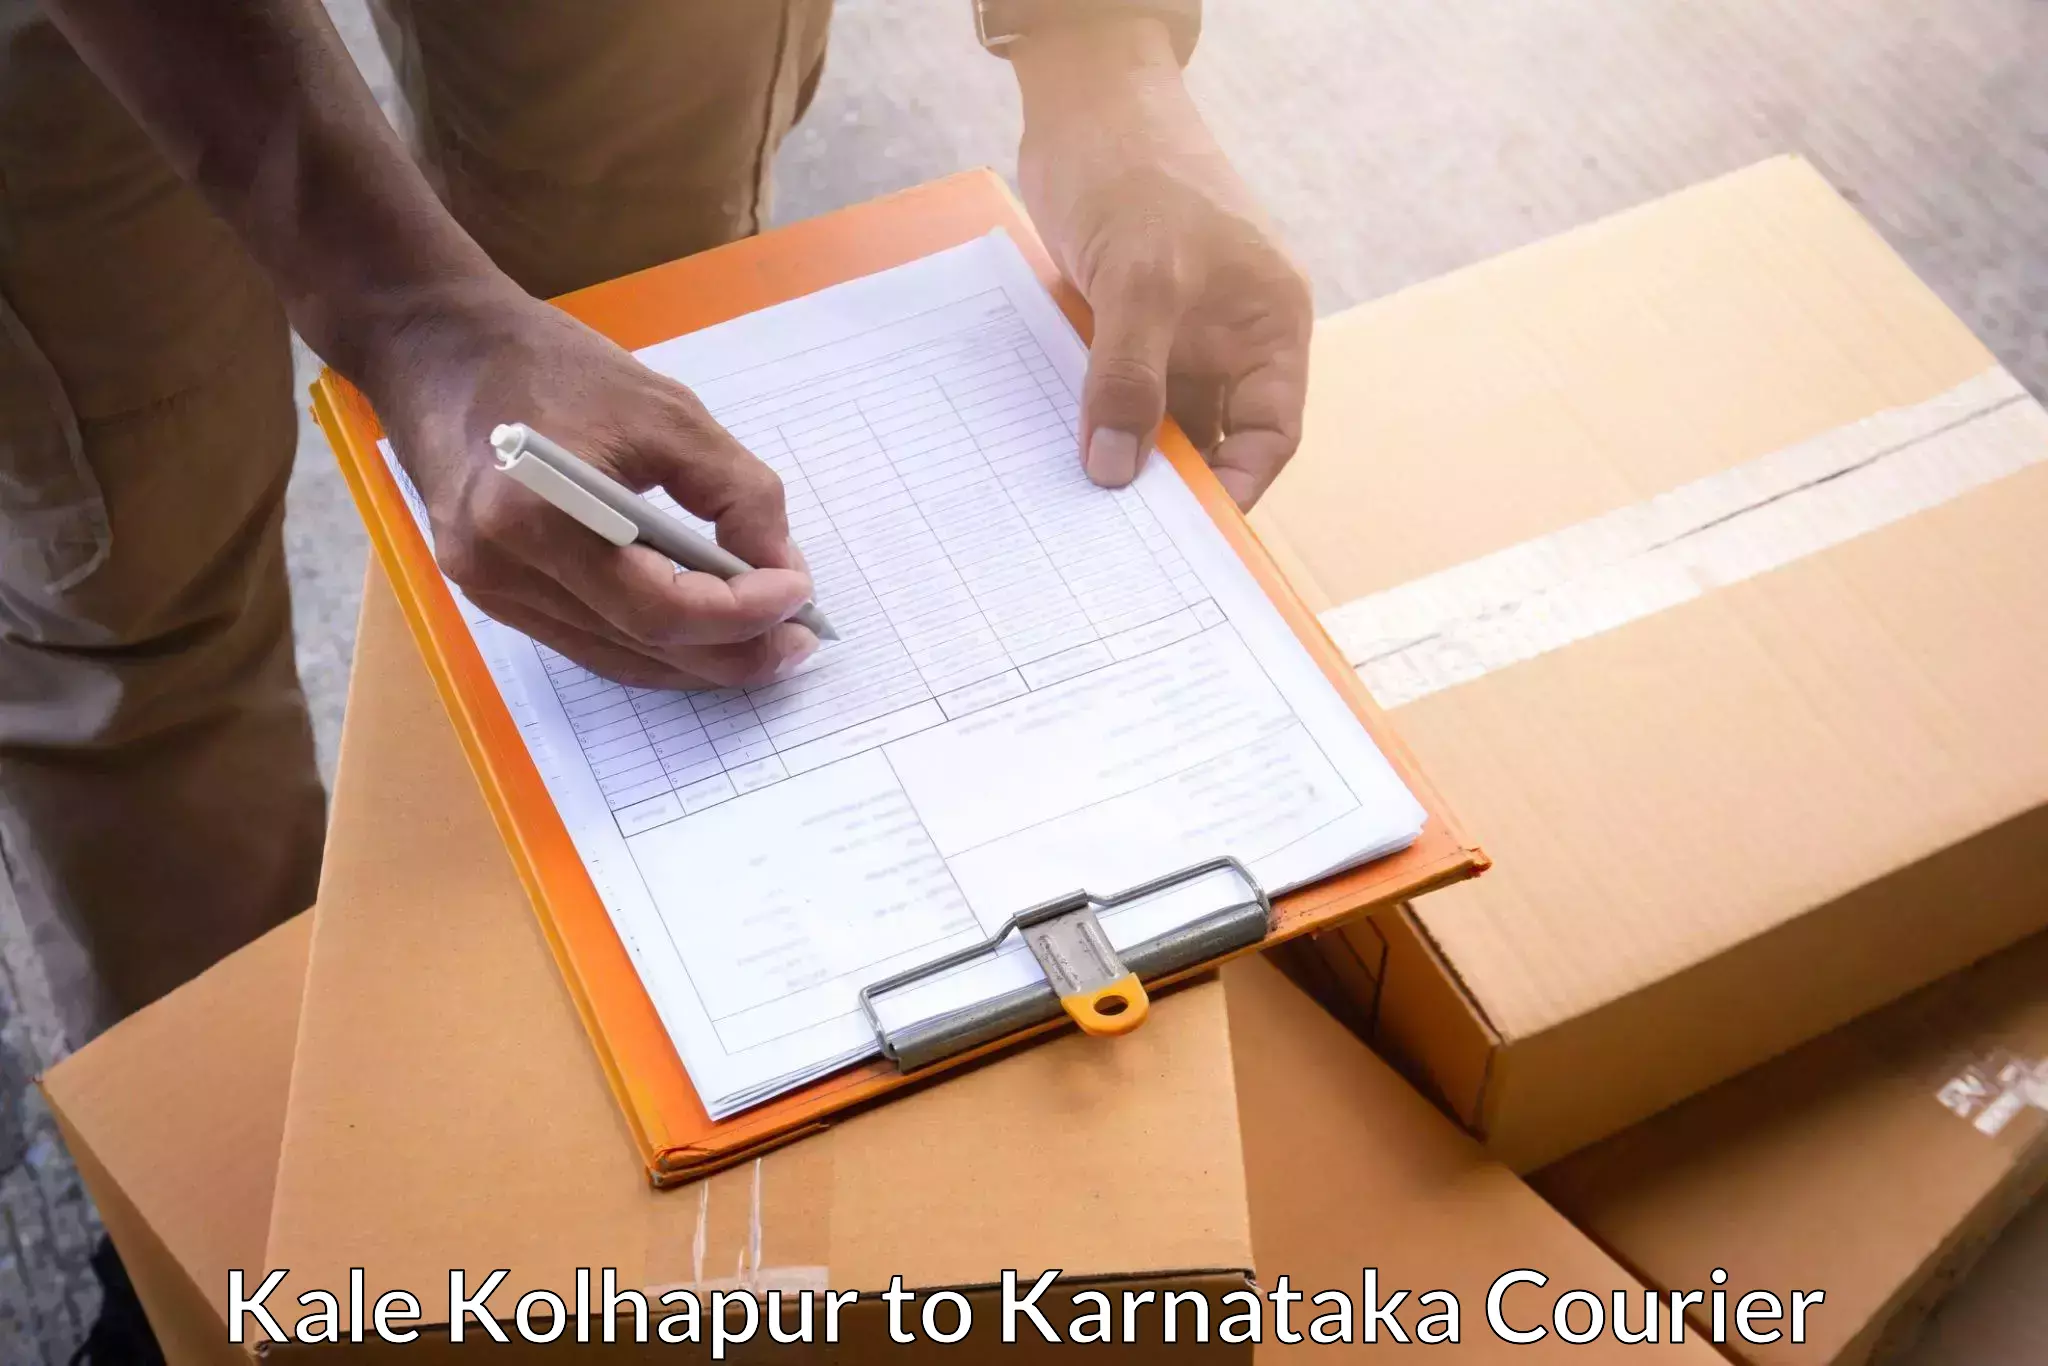 Multi-carrier shipping in Kale Kolhapur to Karnataka